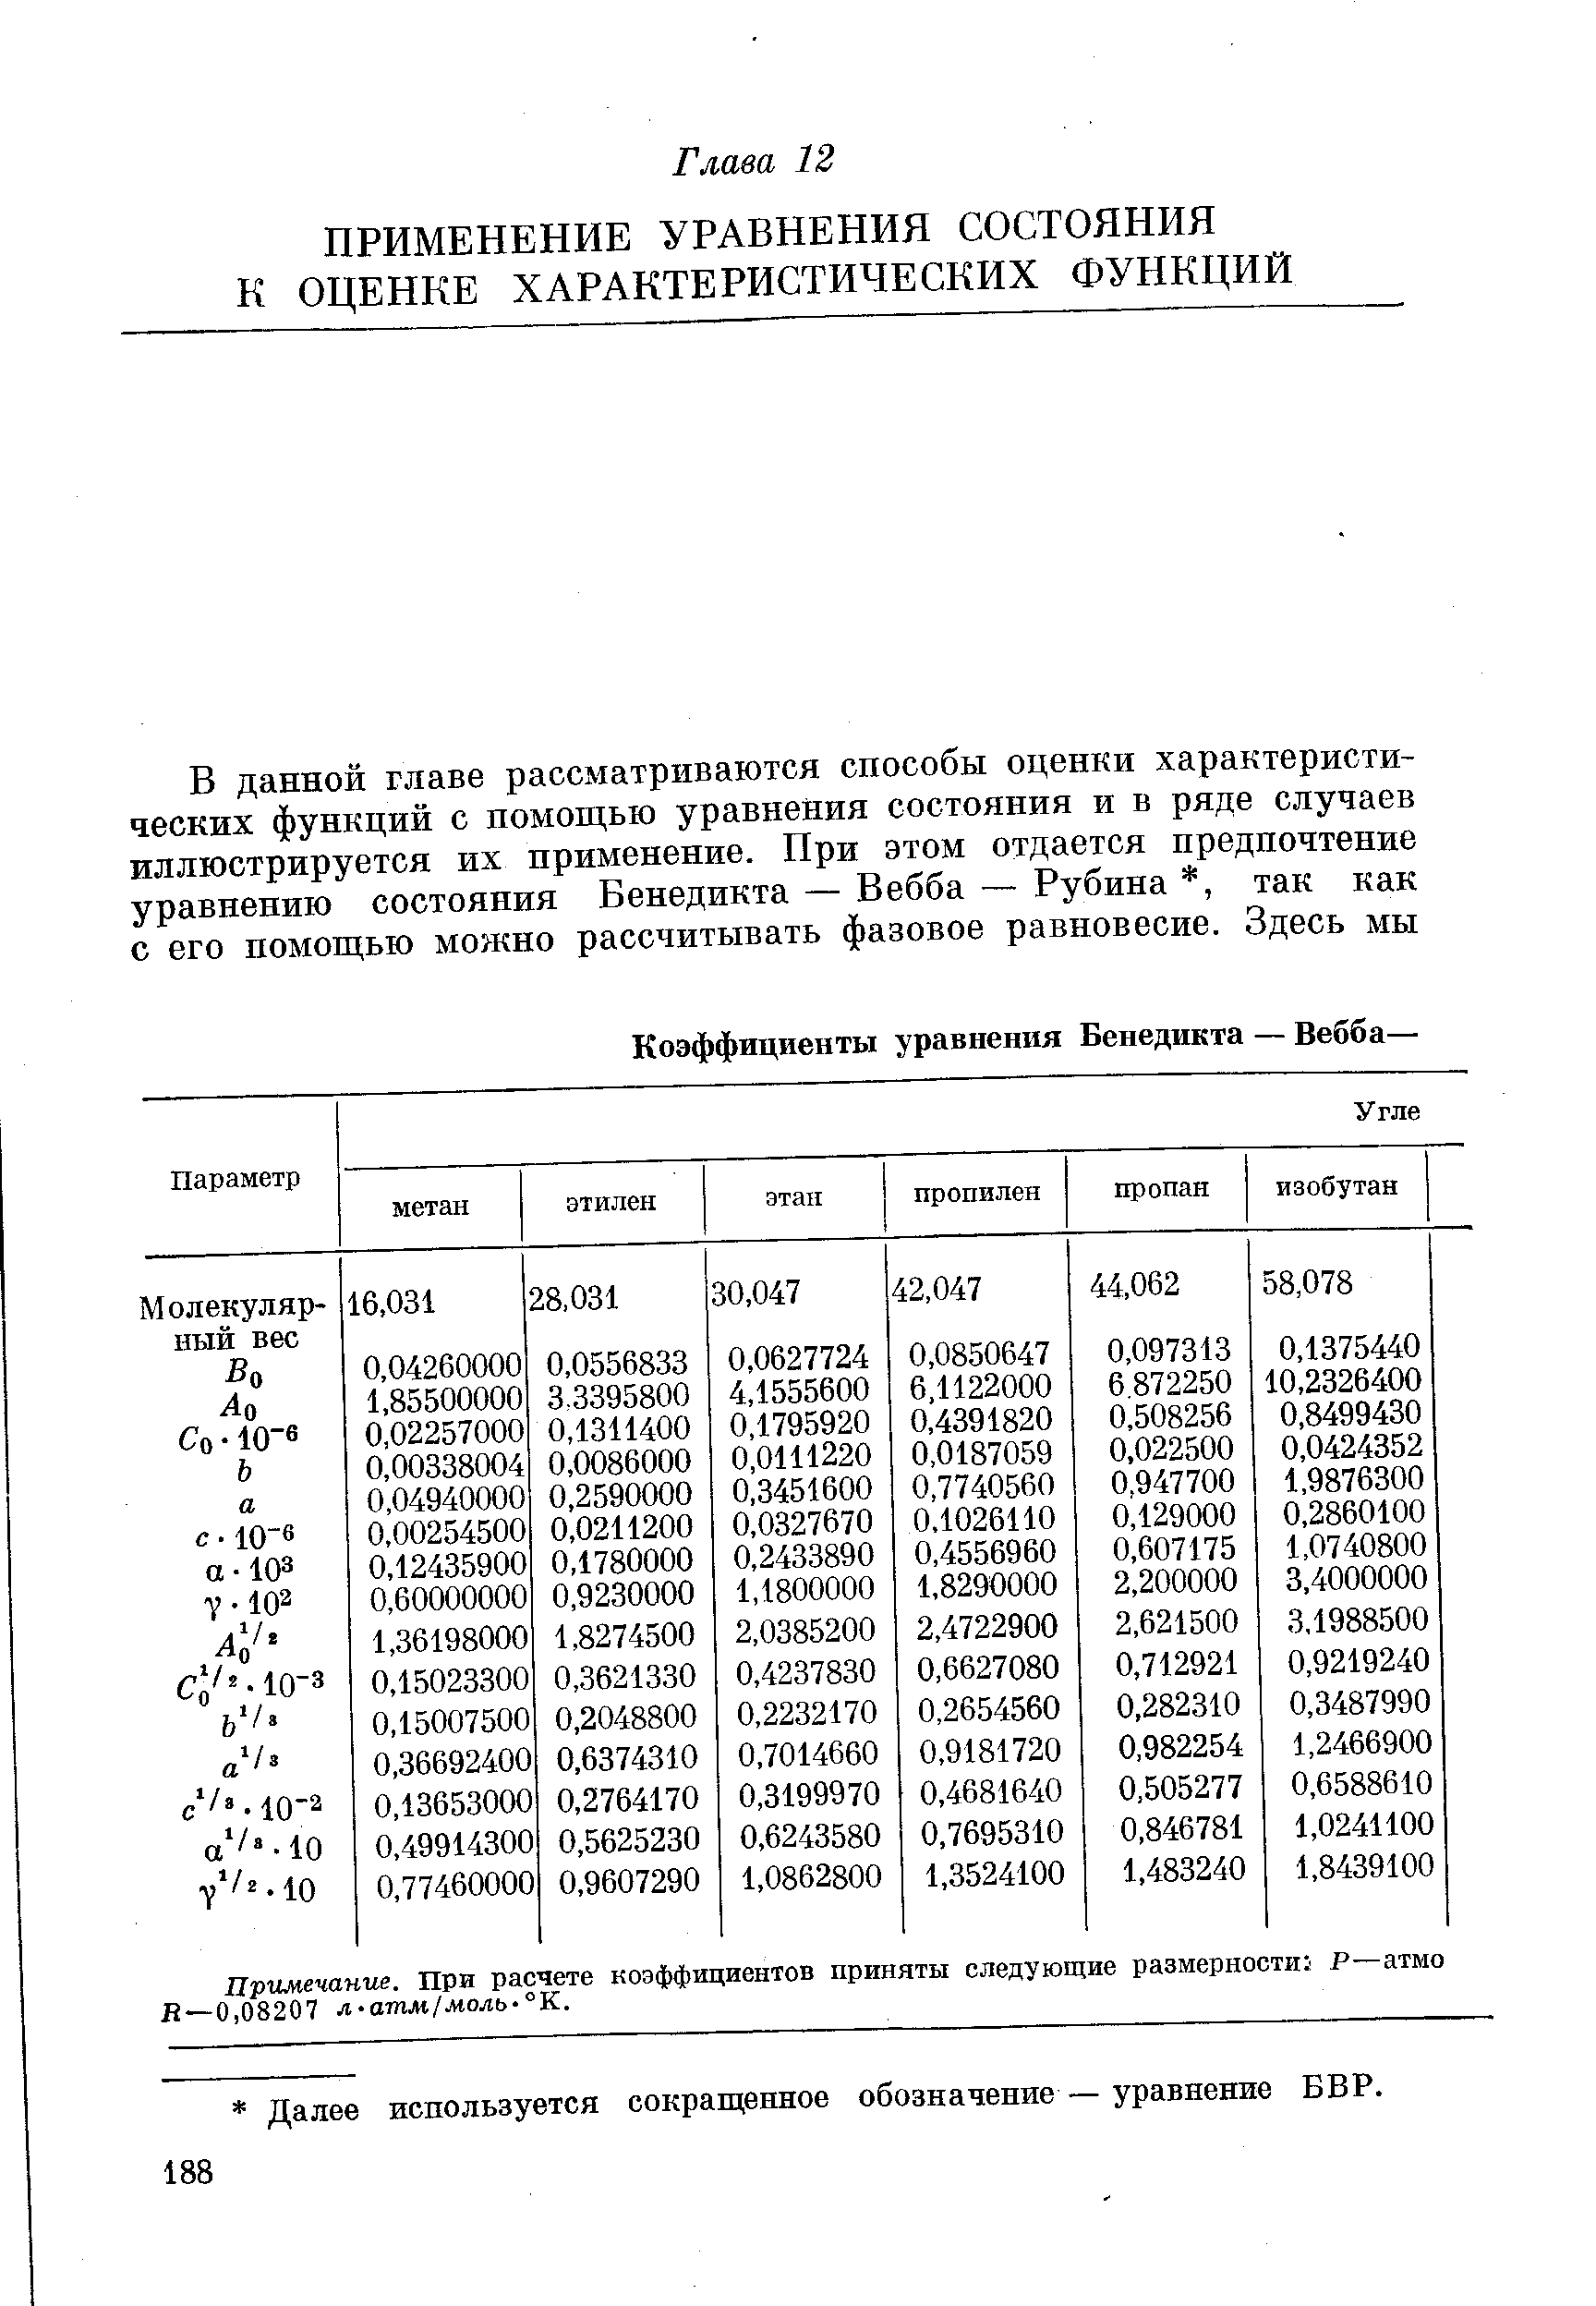 Примечание. При расчете коэффициентов приняты следующие размерности Р—атмо Я—0,08207 л-атм/моль-°К.